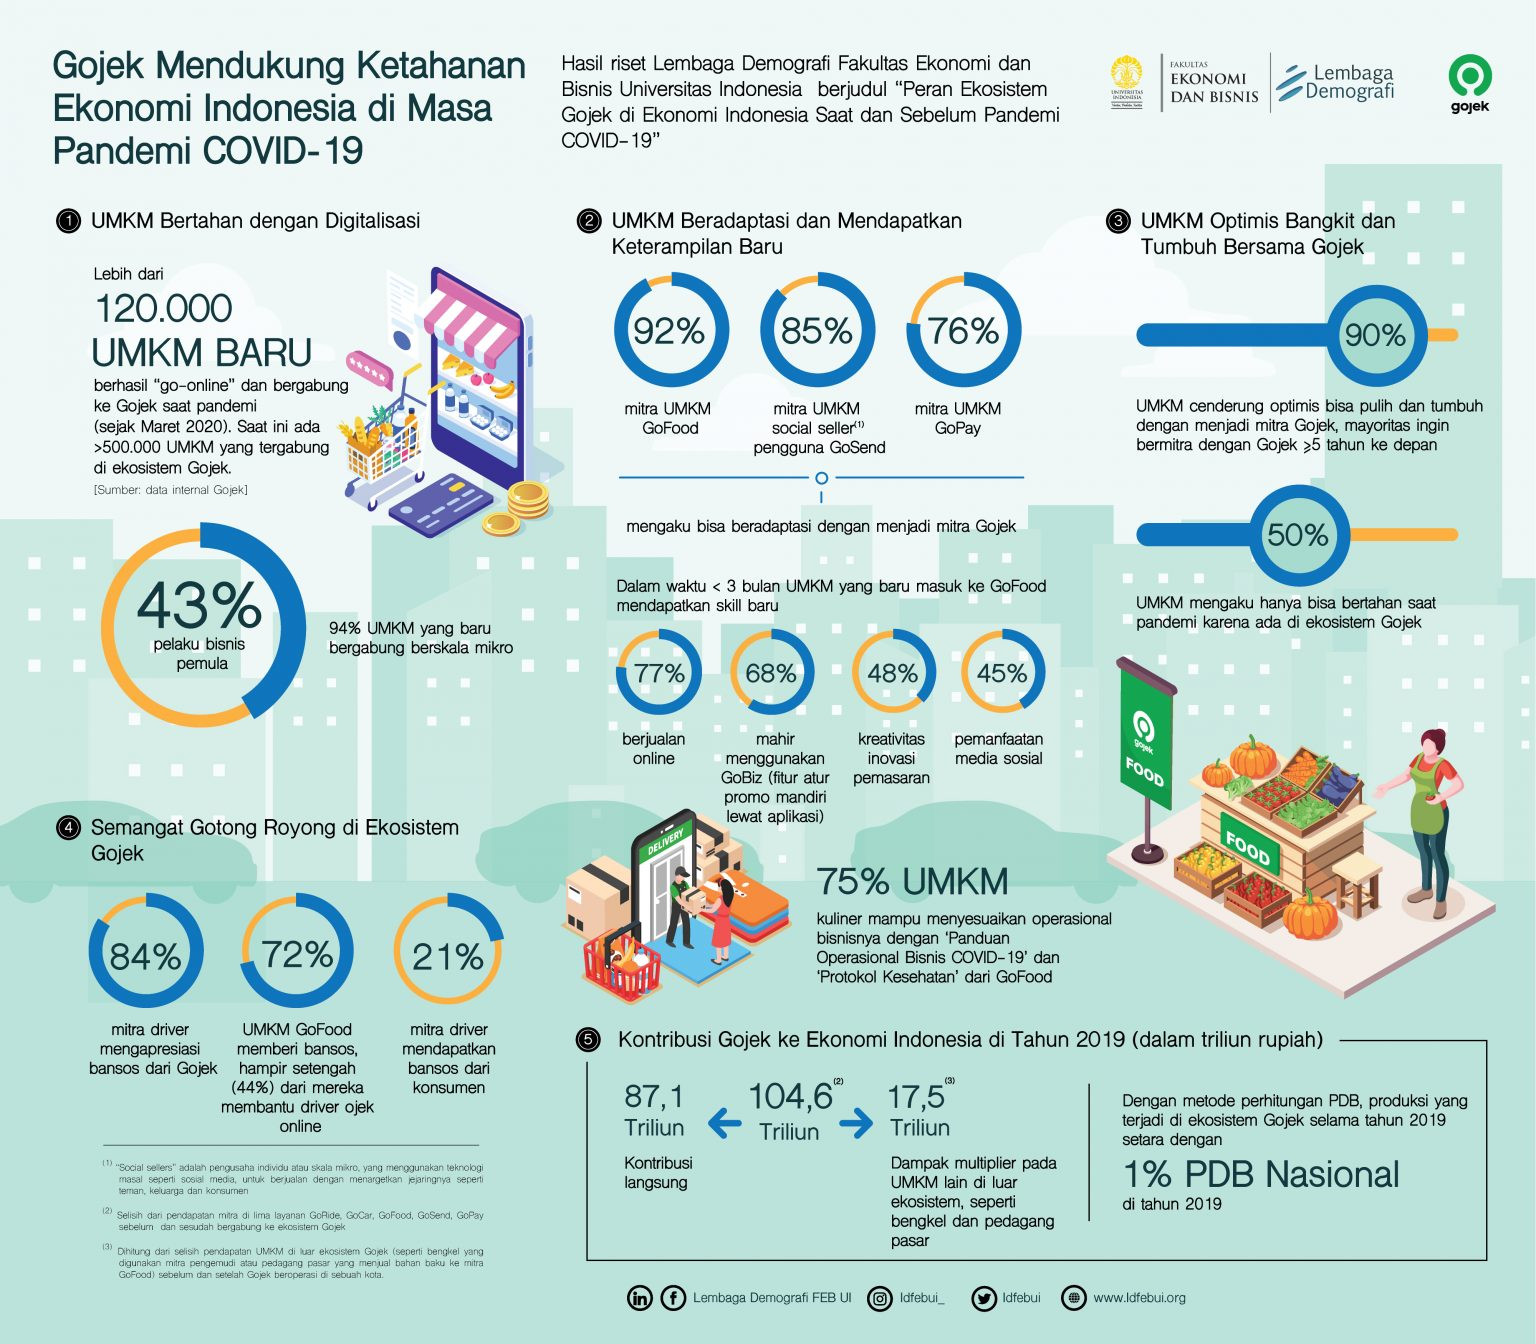 Gojek đã đóng góp 7,1 tỷ USD cho nền kinh tế Indonesia năm 2019 - Ảnh 2.